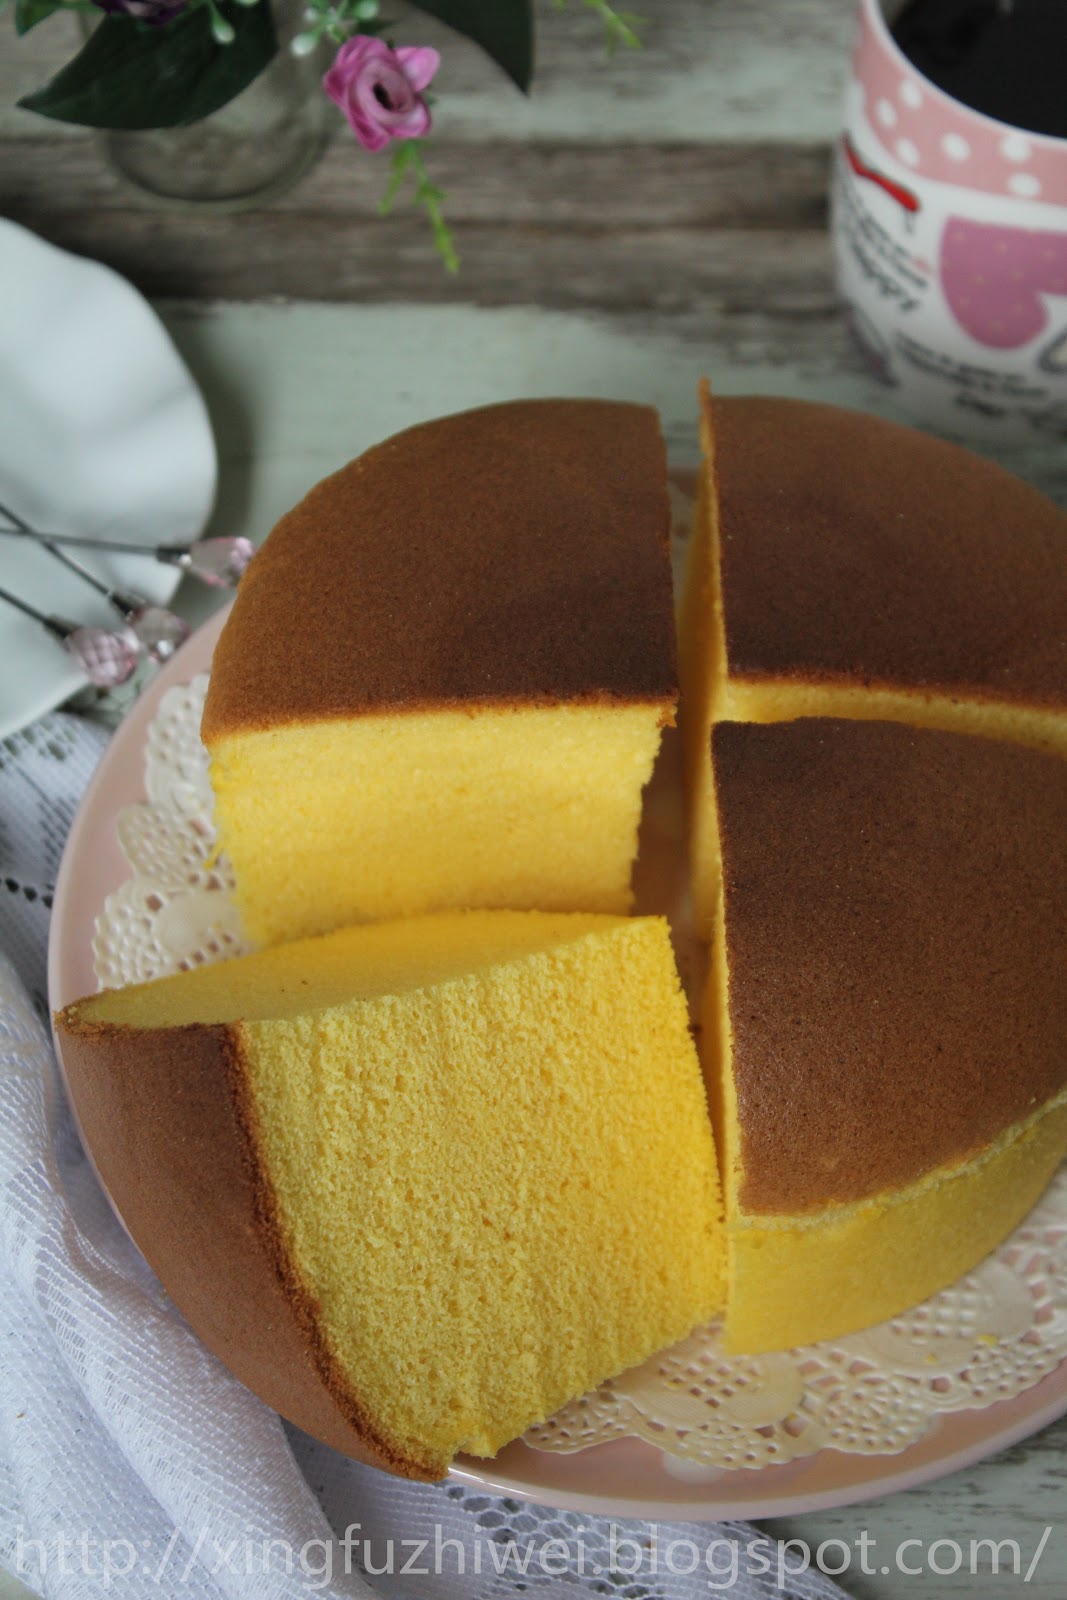 雨之家: 日式棉花芝士蛋糕《Japanese Cotton Cheese Cake》